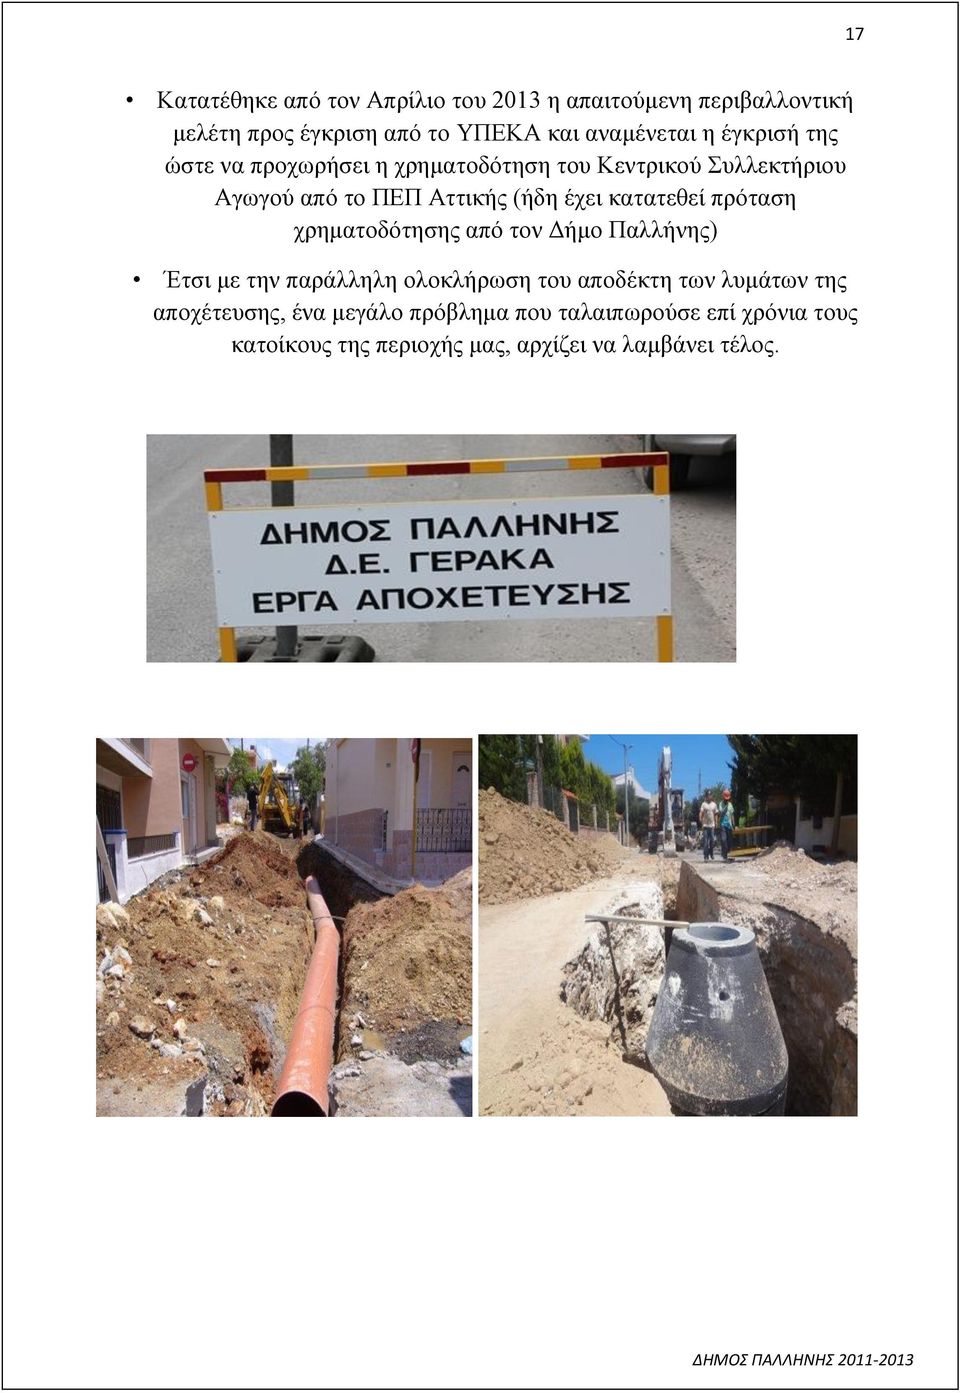 κατατεθεί πρόταση χρηματοδότησης από τον Δήμο Παλλήνης) Έτσι με την παράλληλη ολοκλήρωση του αποδέκτη των λυμάτων